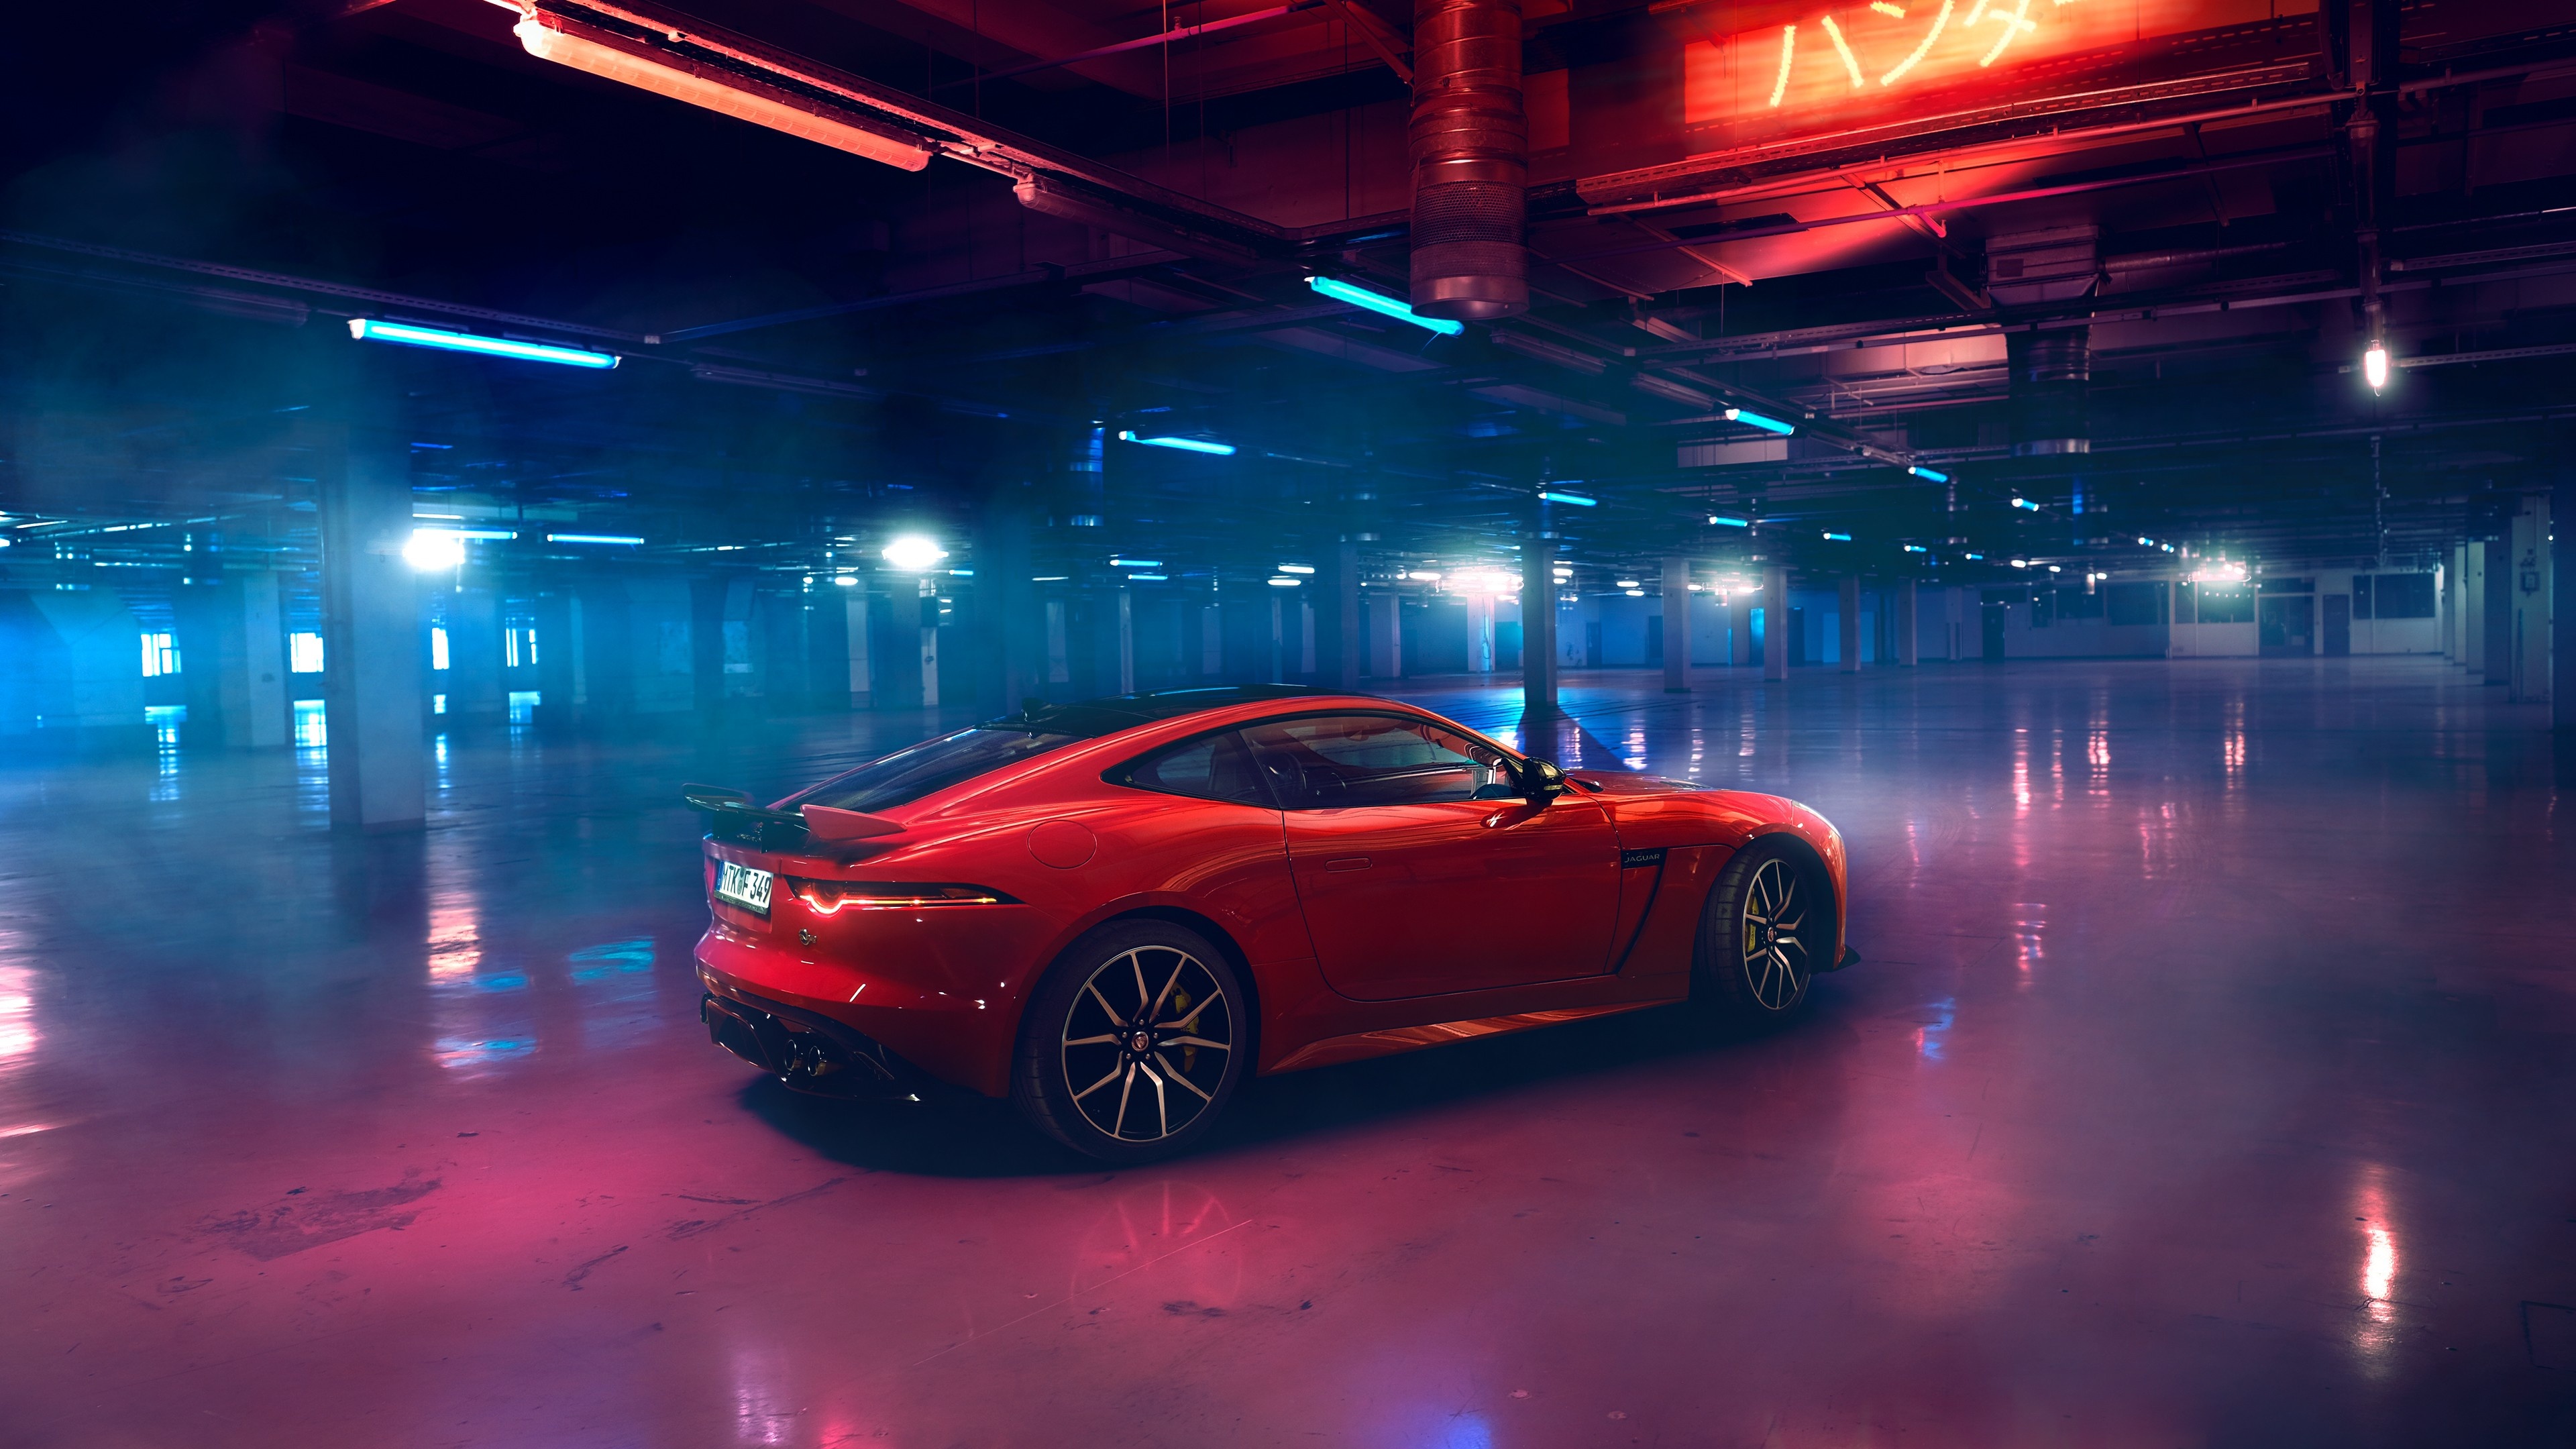 Jaguar F-TYPE luxury cars, 2019 cars, 4K cars, Cars and bikes, 3840x2160 4K Desktop